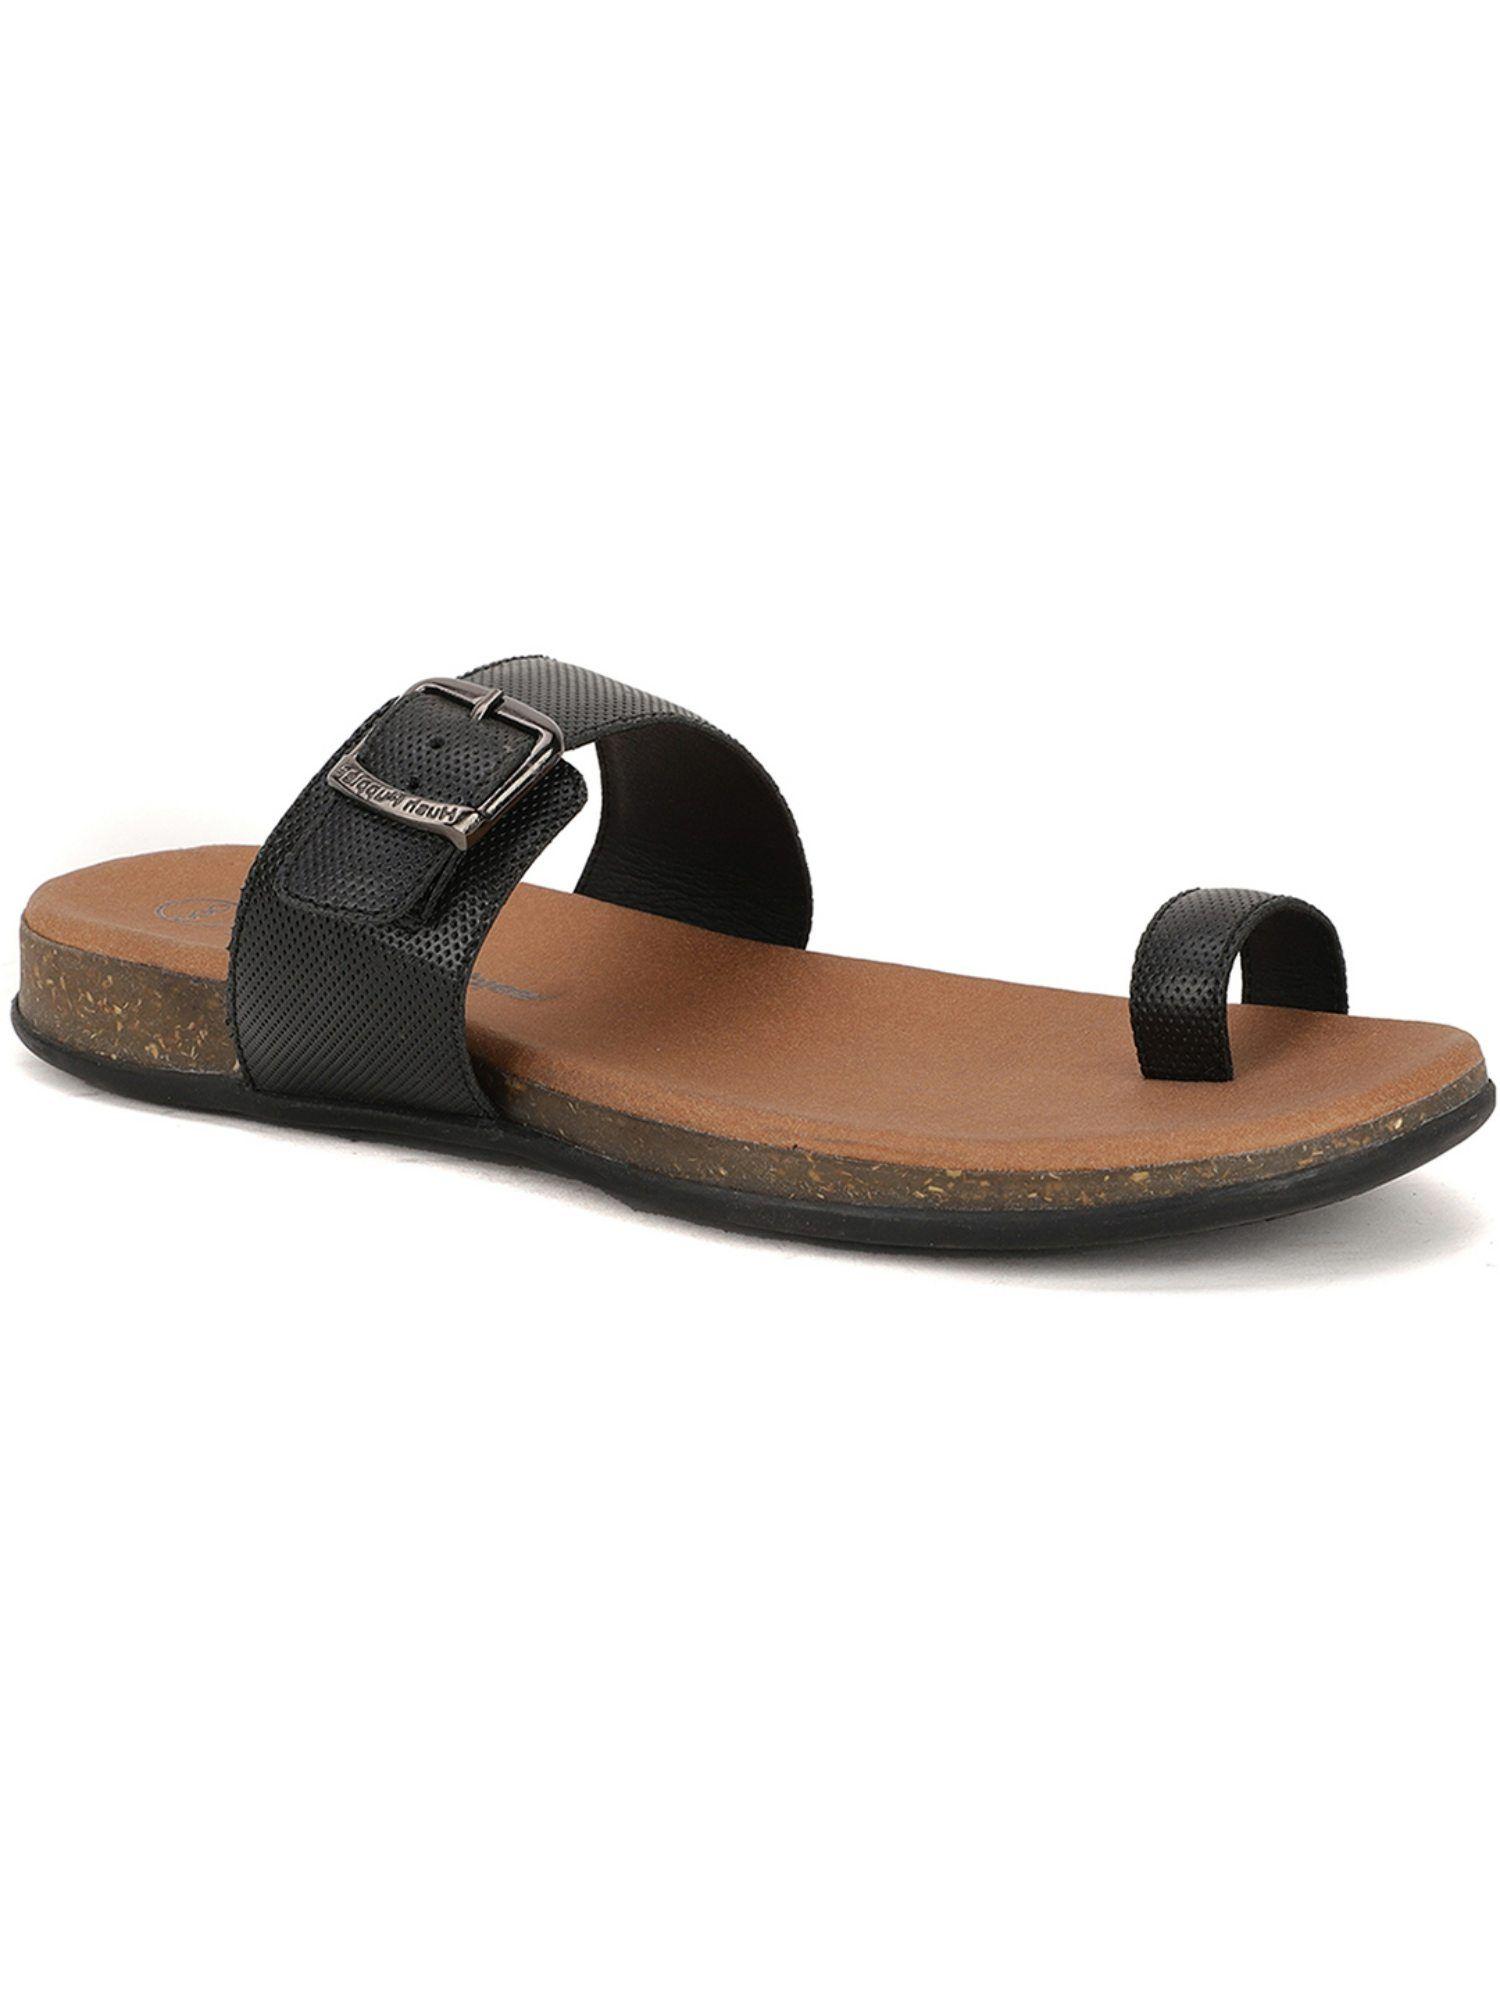 solid black sandals